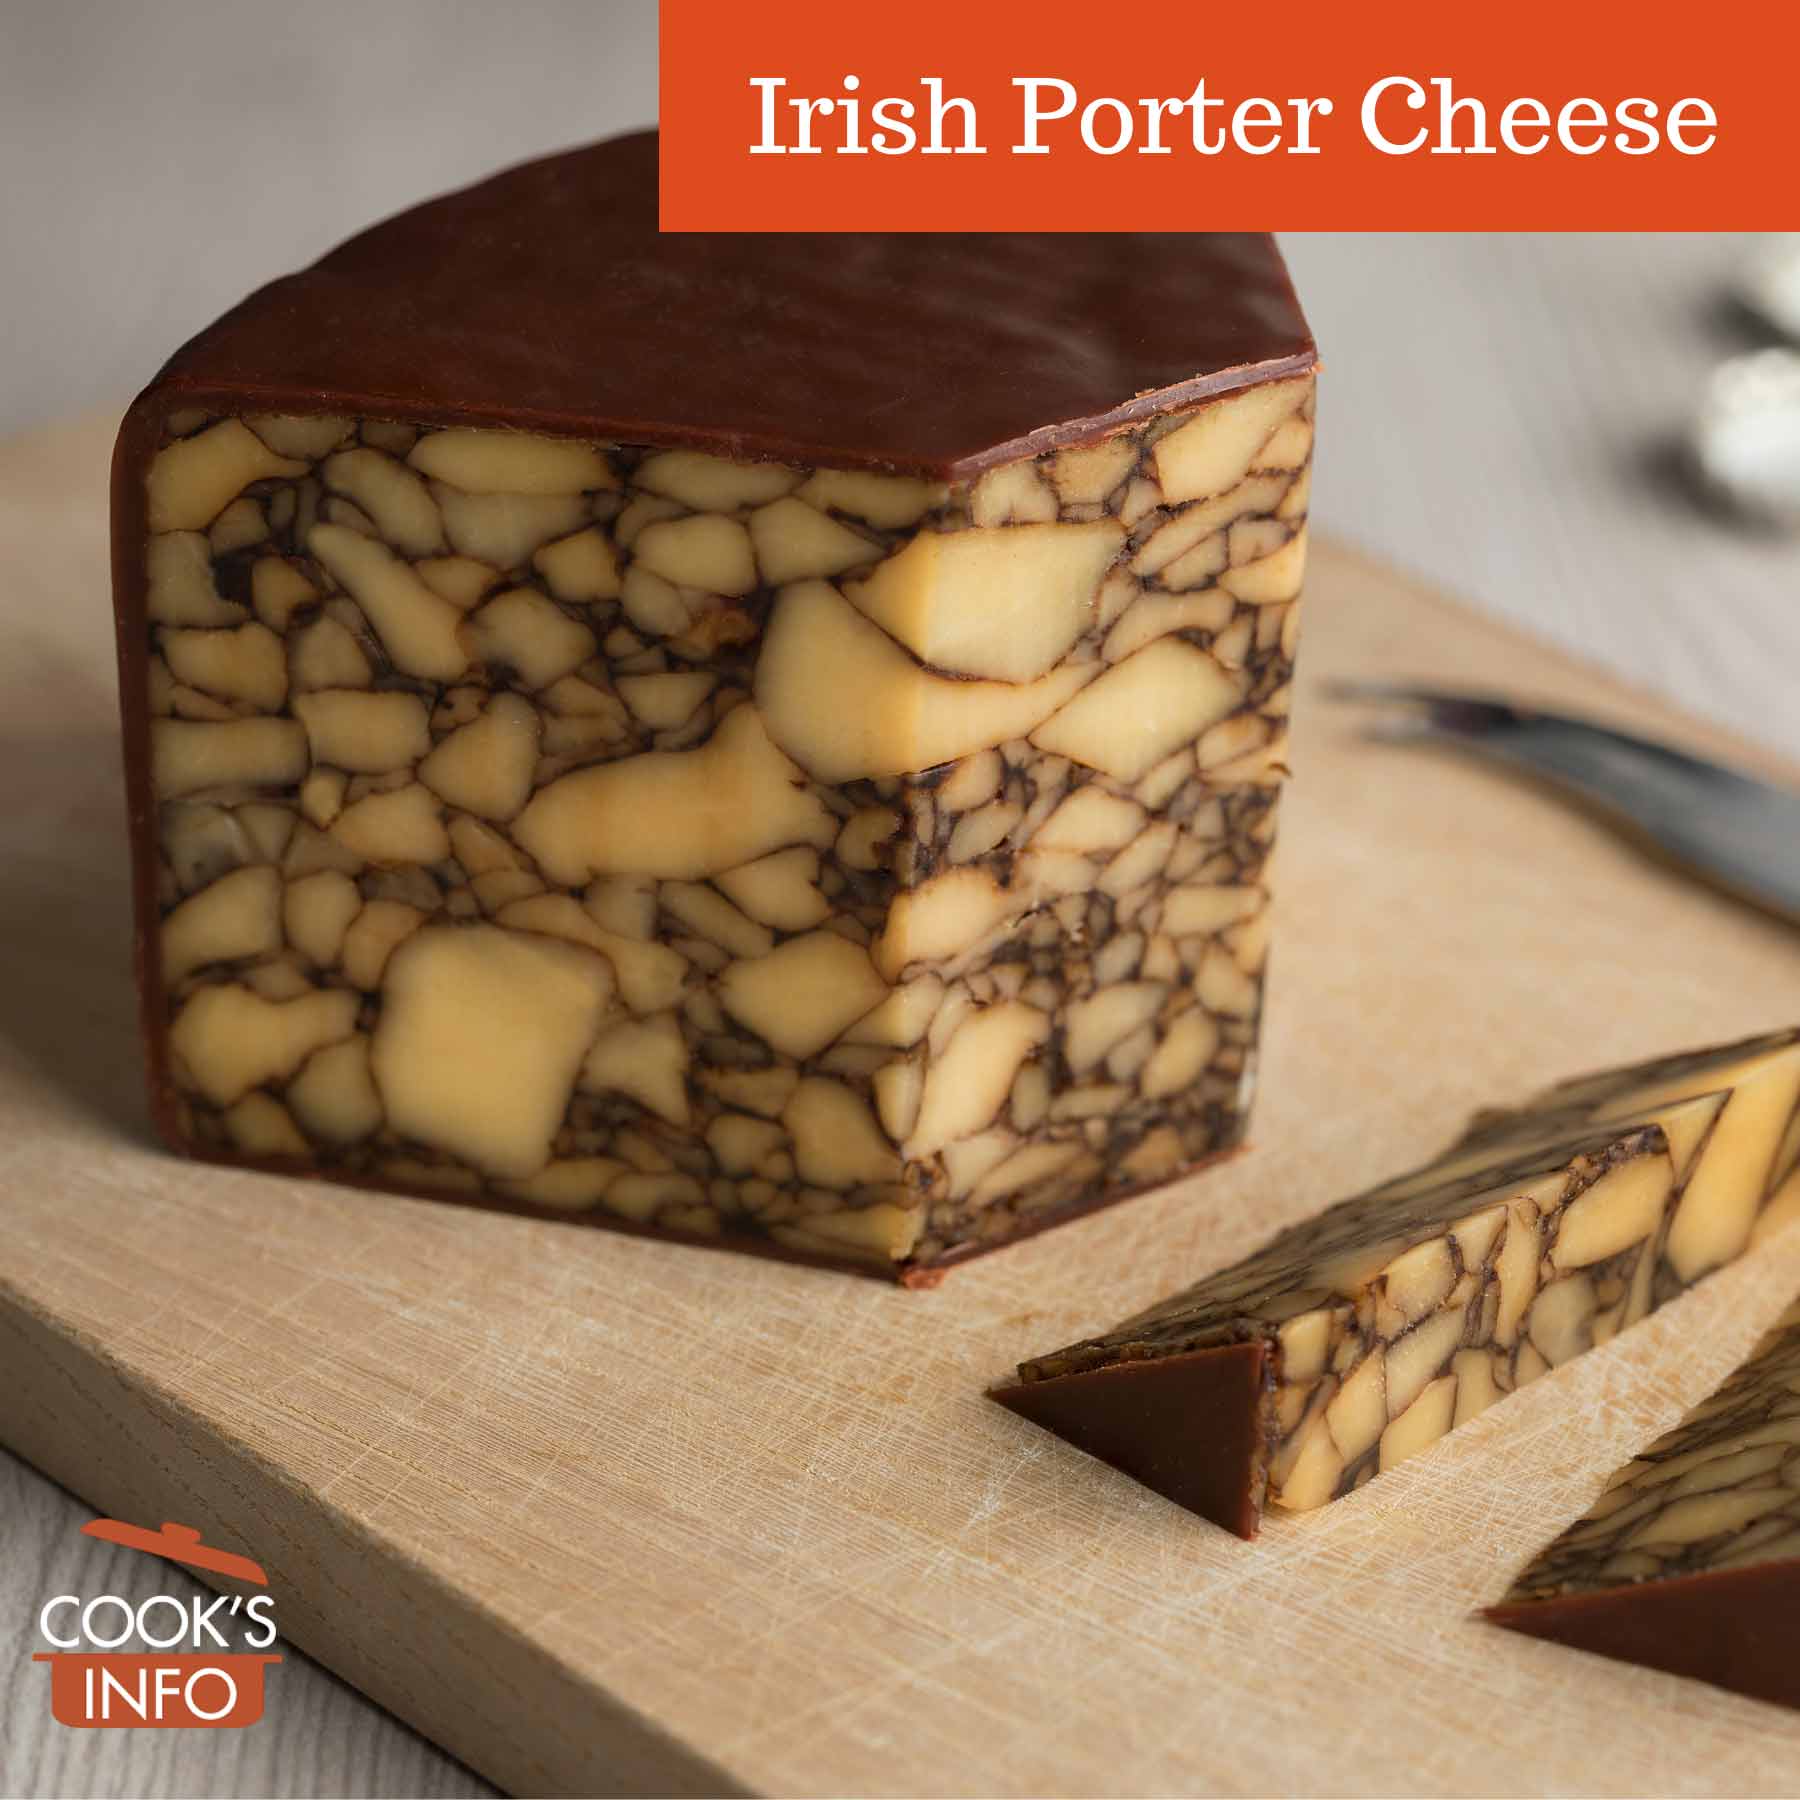 Irish Porter Cheese on a cutting board